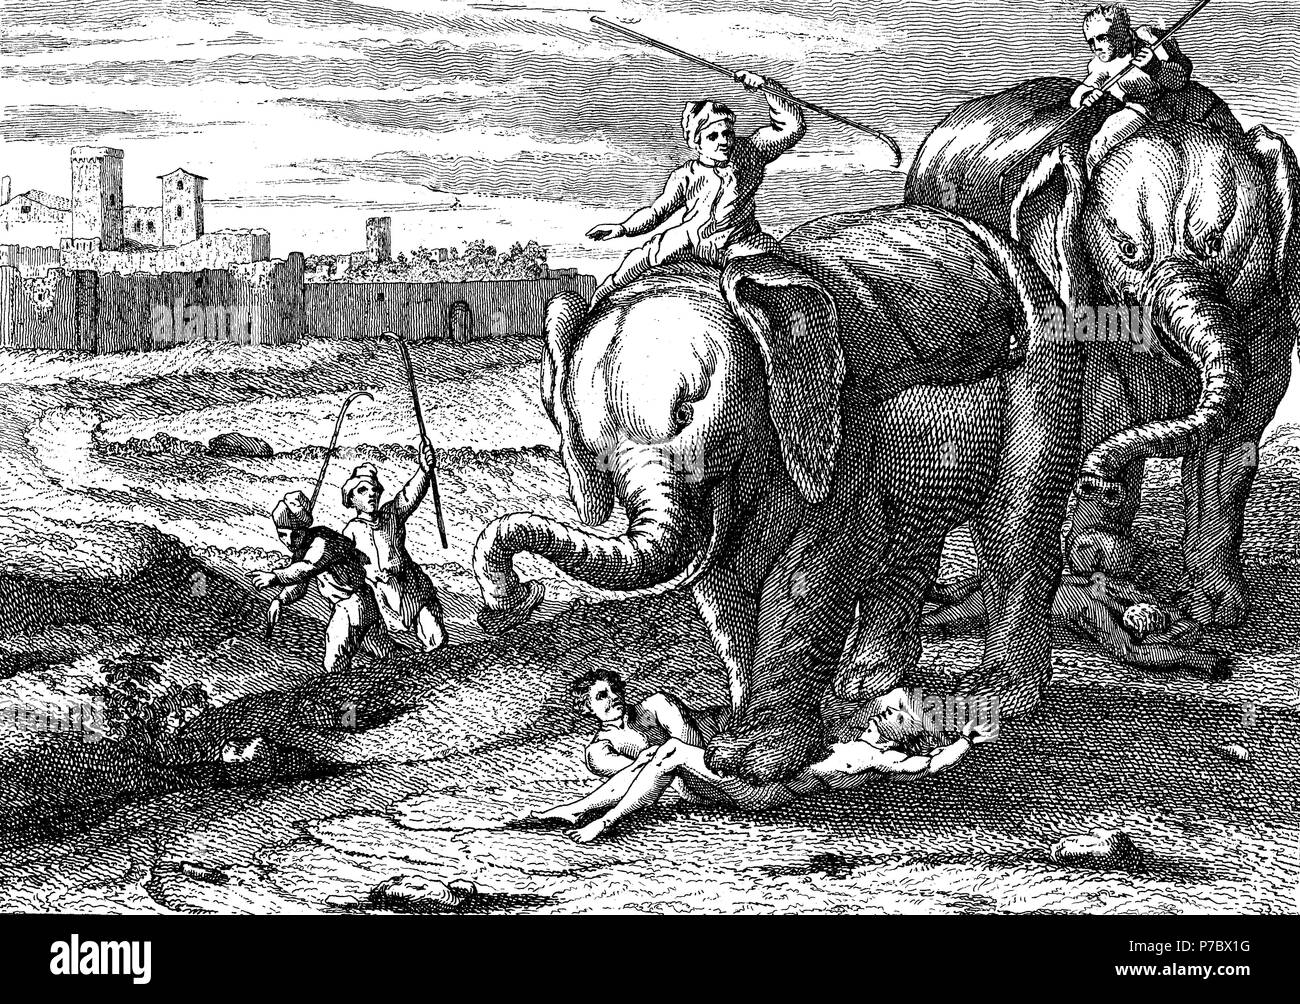 Historia sagrada. Elefantes aplastando con sus patas los cuerpos de dos condenados. Grabado de 1862. Stock Photo